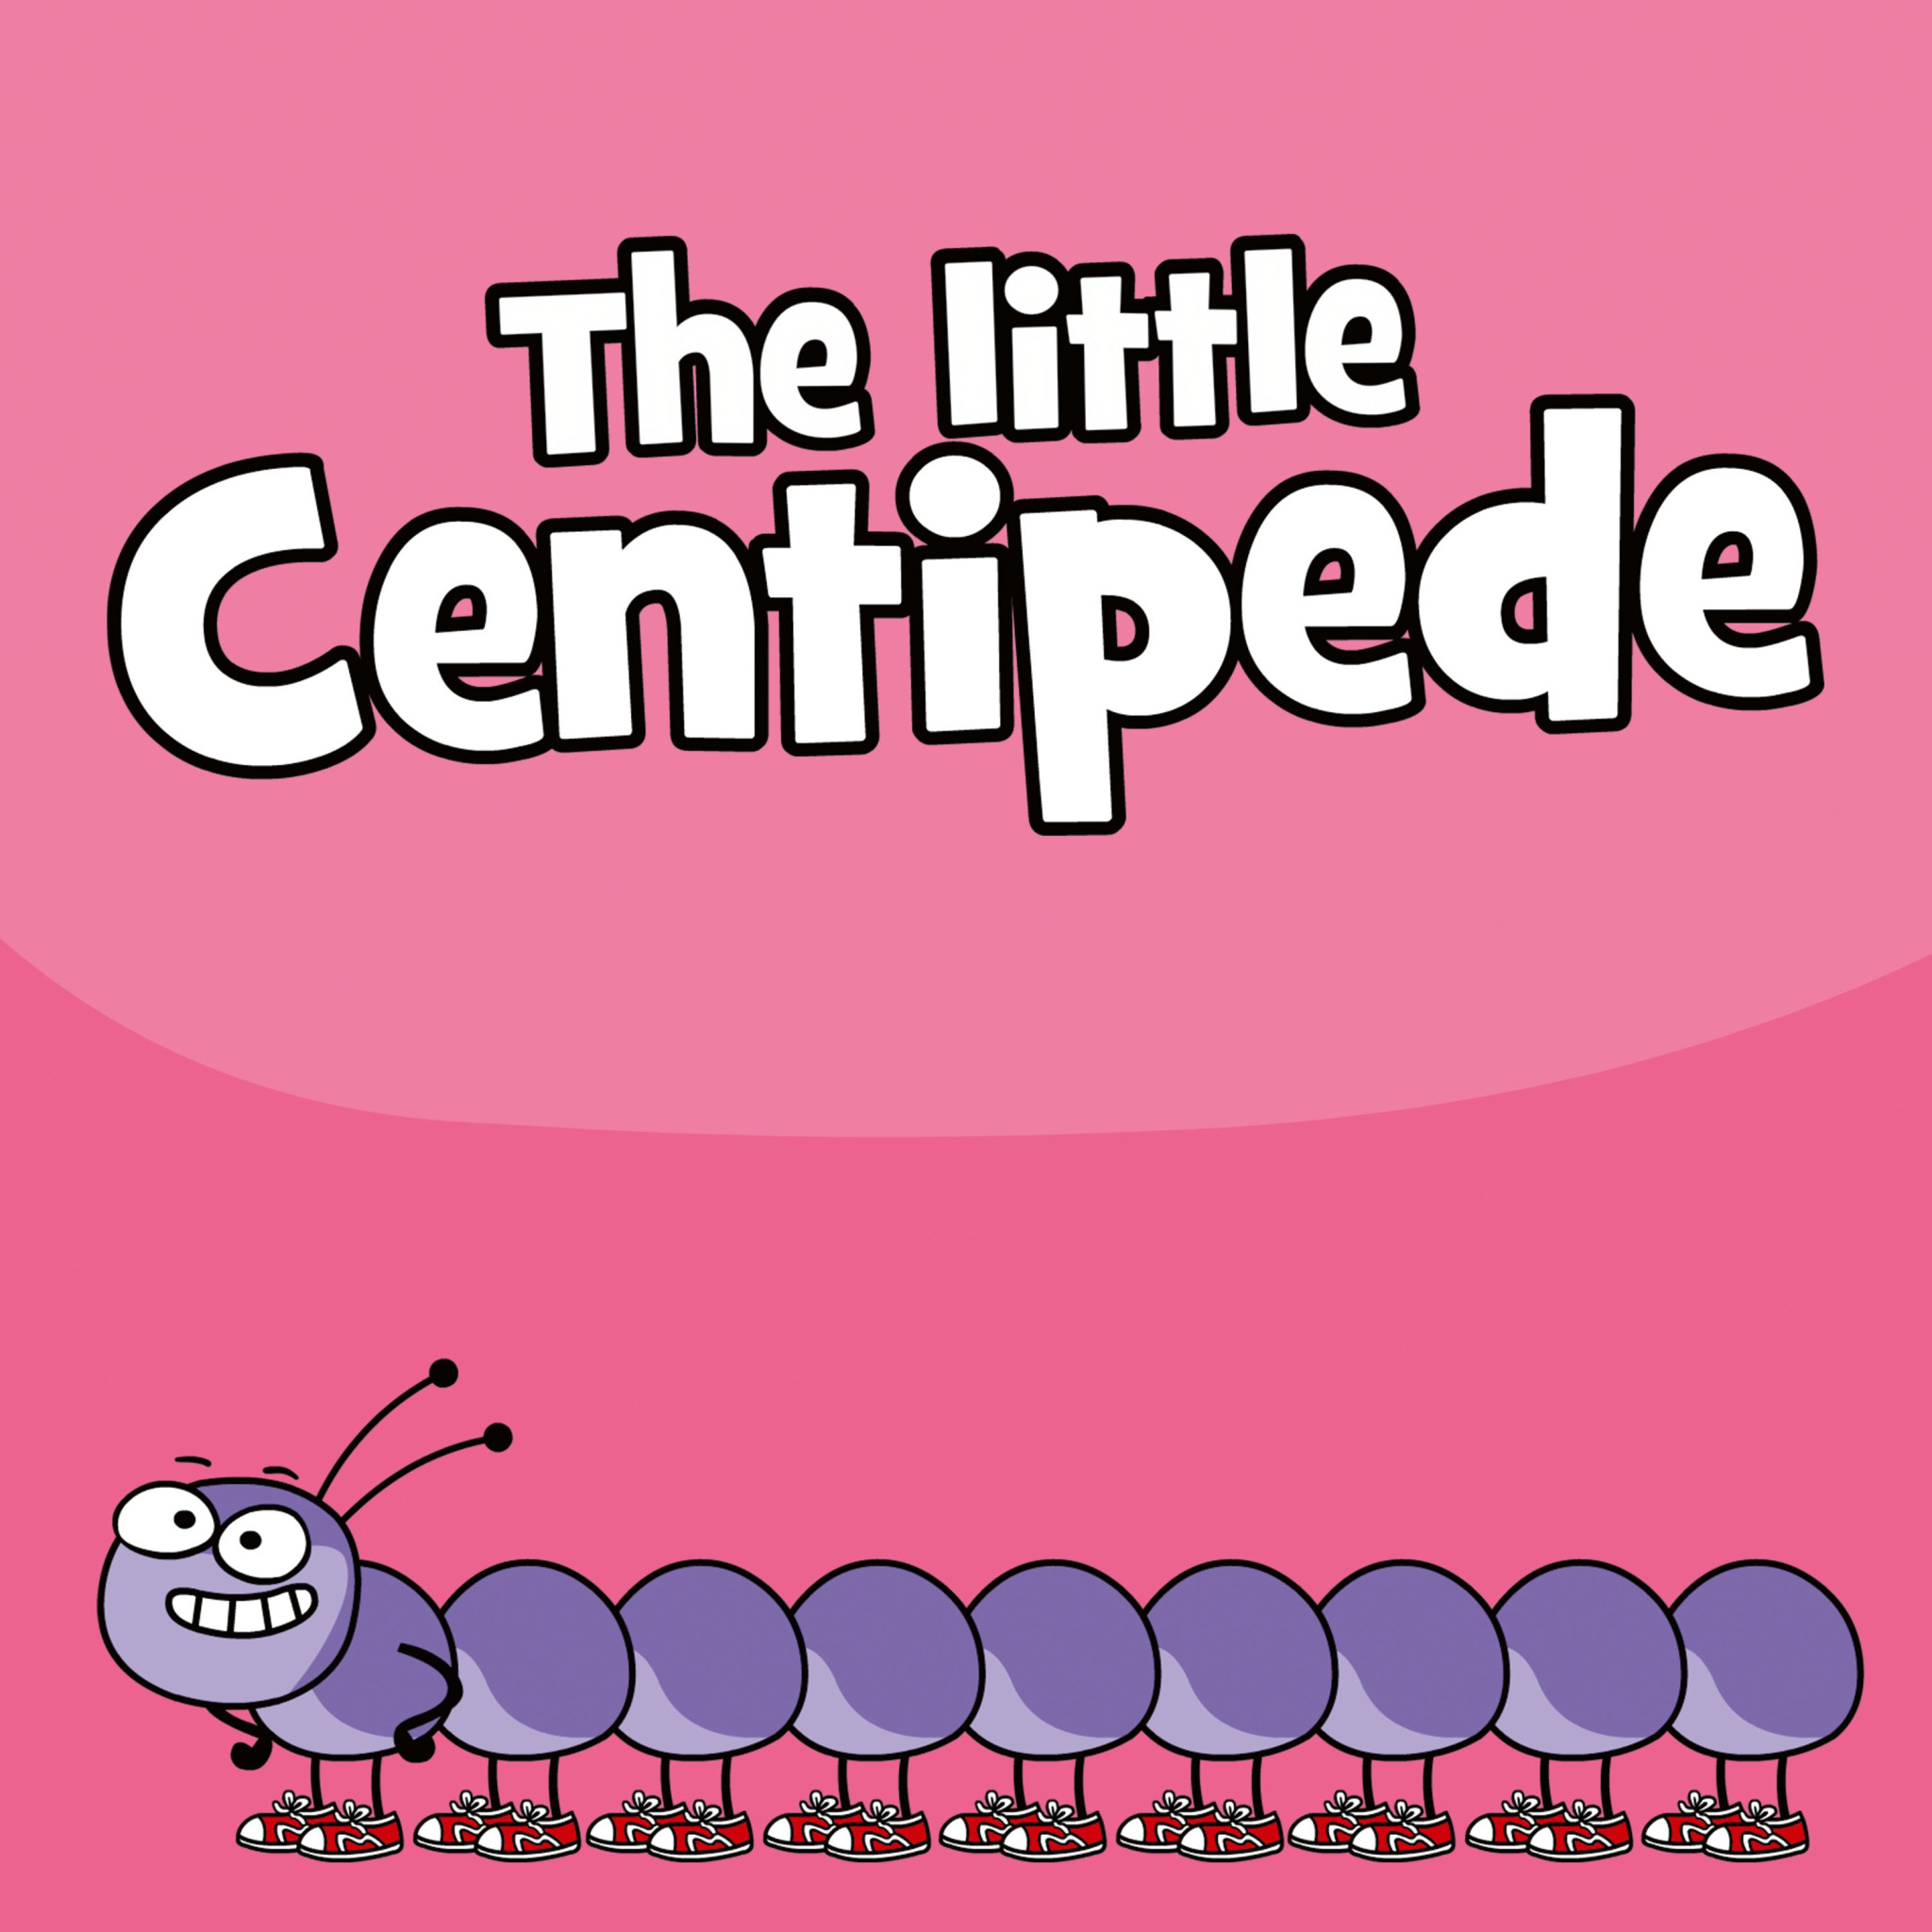 The_little_Centipede_eSingle-COVER_3k_sRGB_LZW.jpg